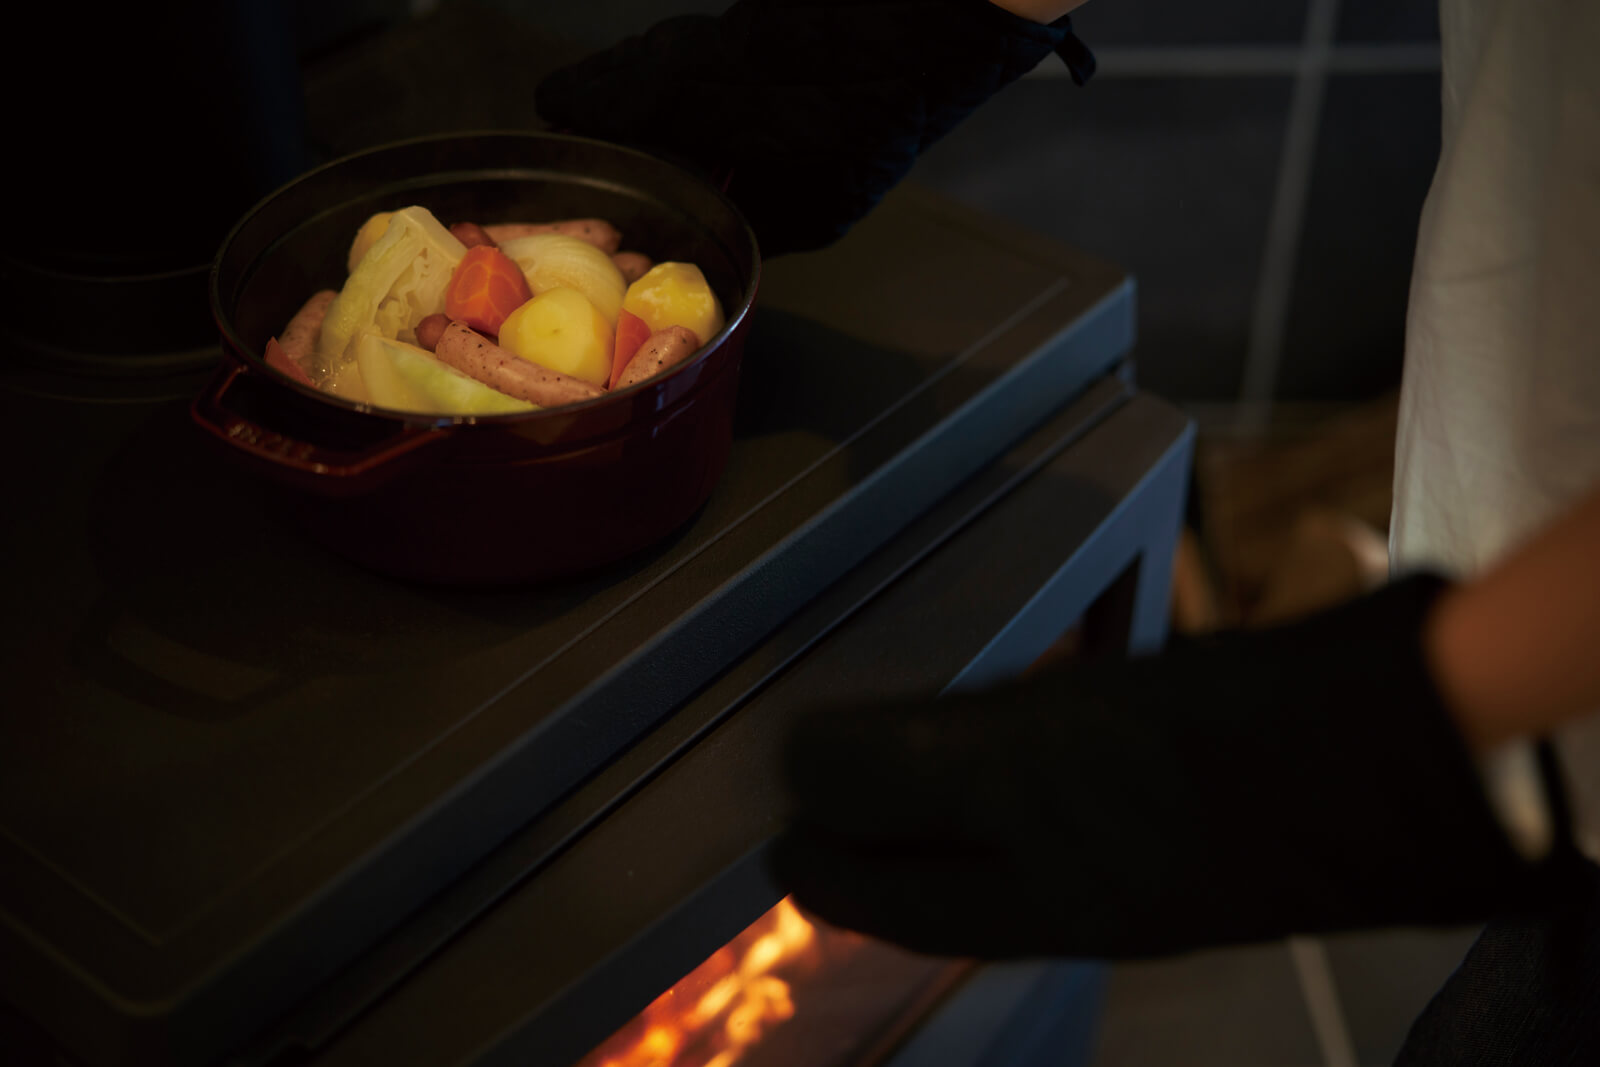 ストーブトップはもちろん、炉内での調理も可能なタイプの薪ストーブを選択。料理のレパートリーが広がる